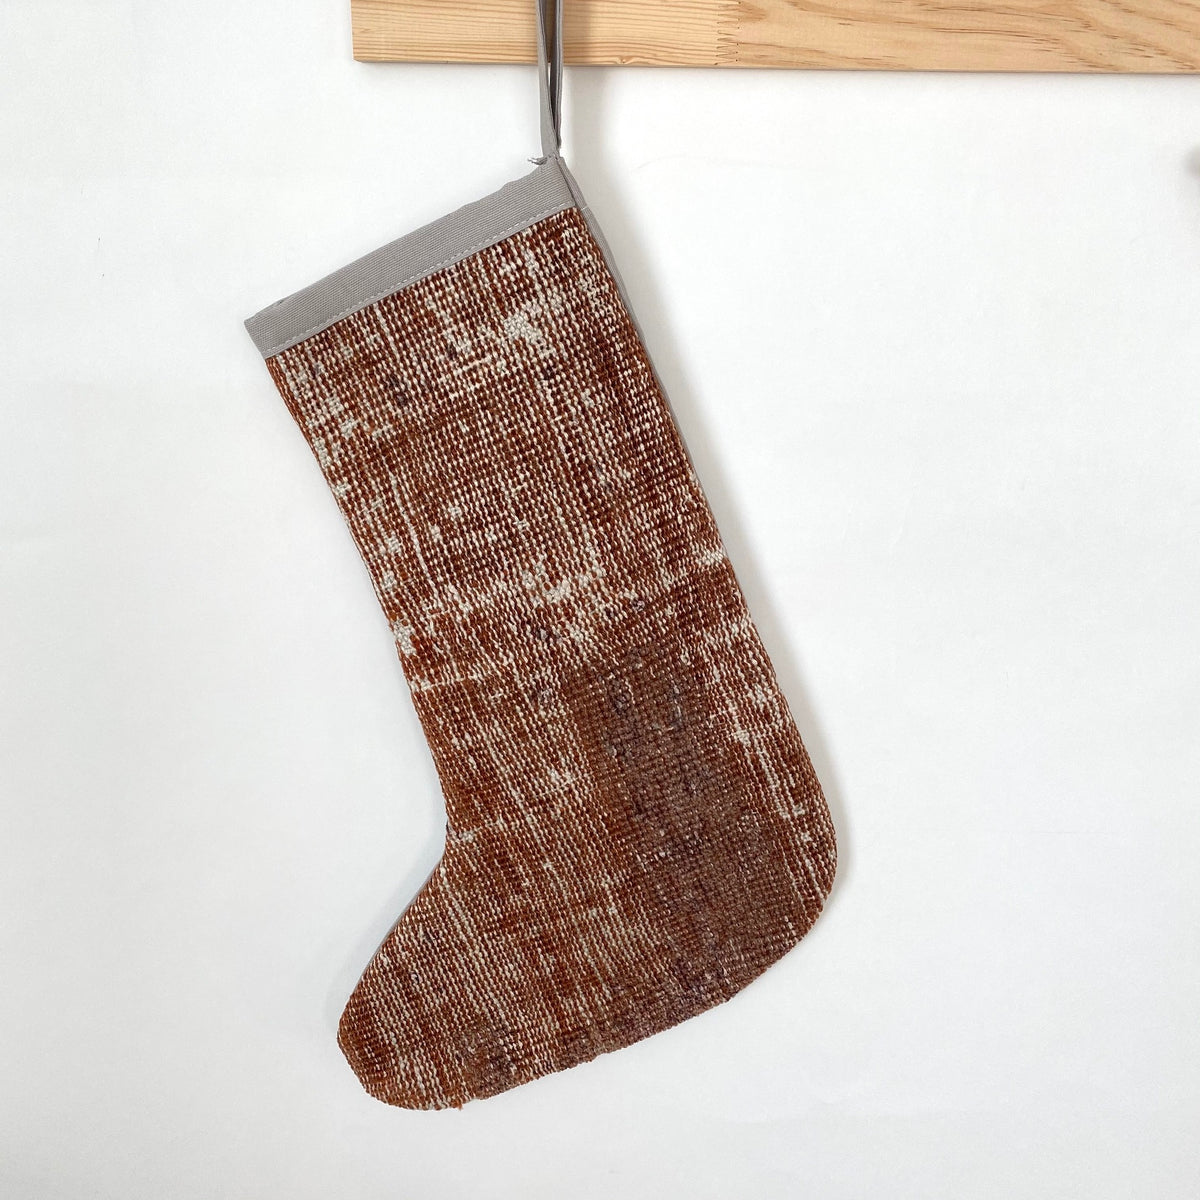 Lenya - Vintage Stocking - kudenrugs